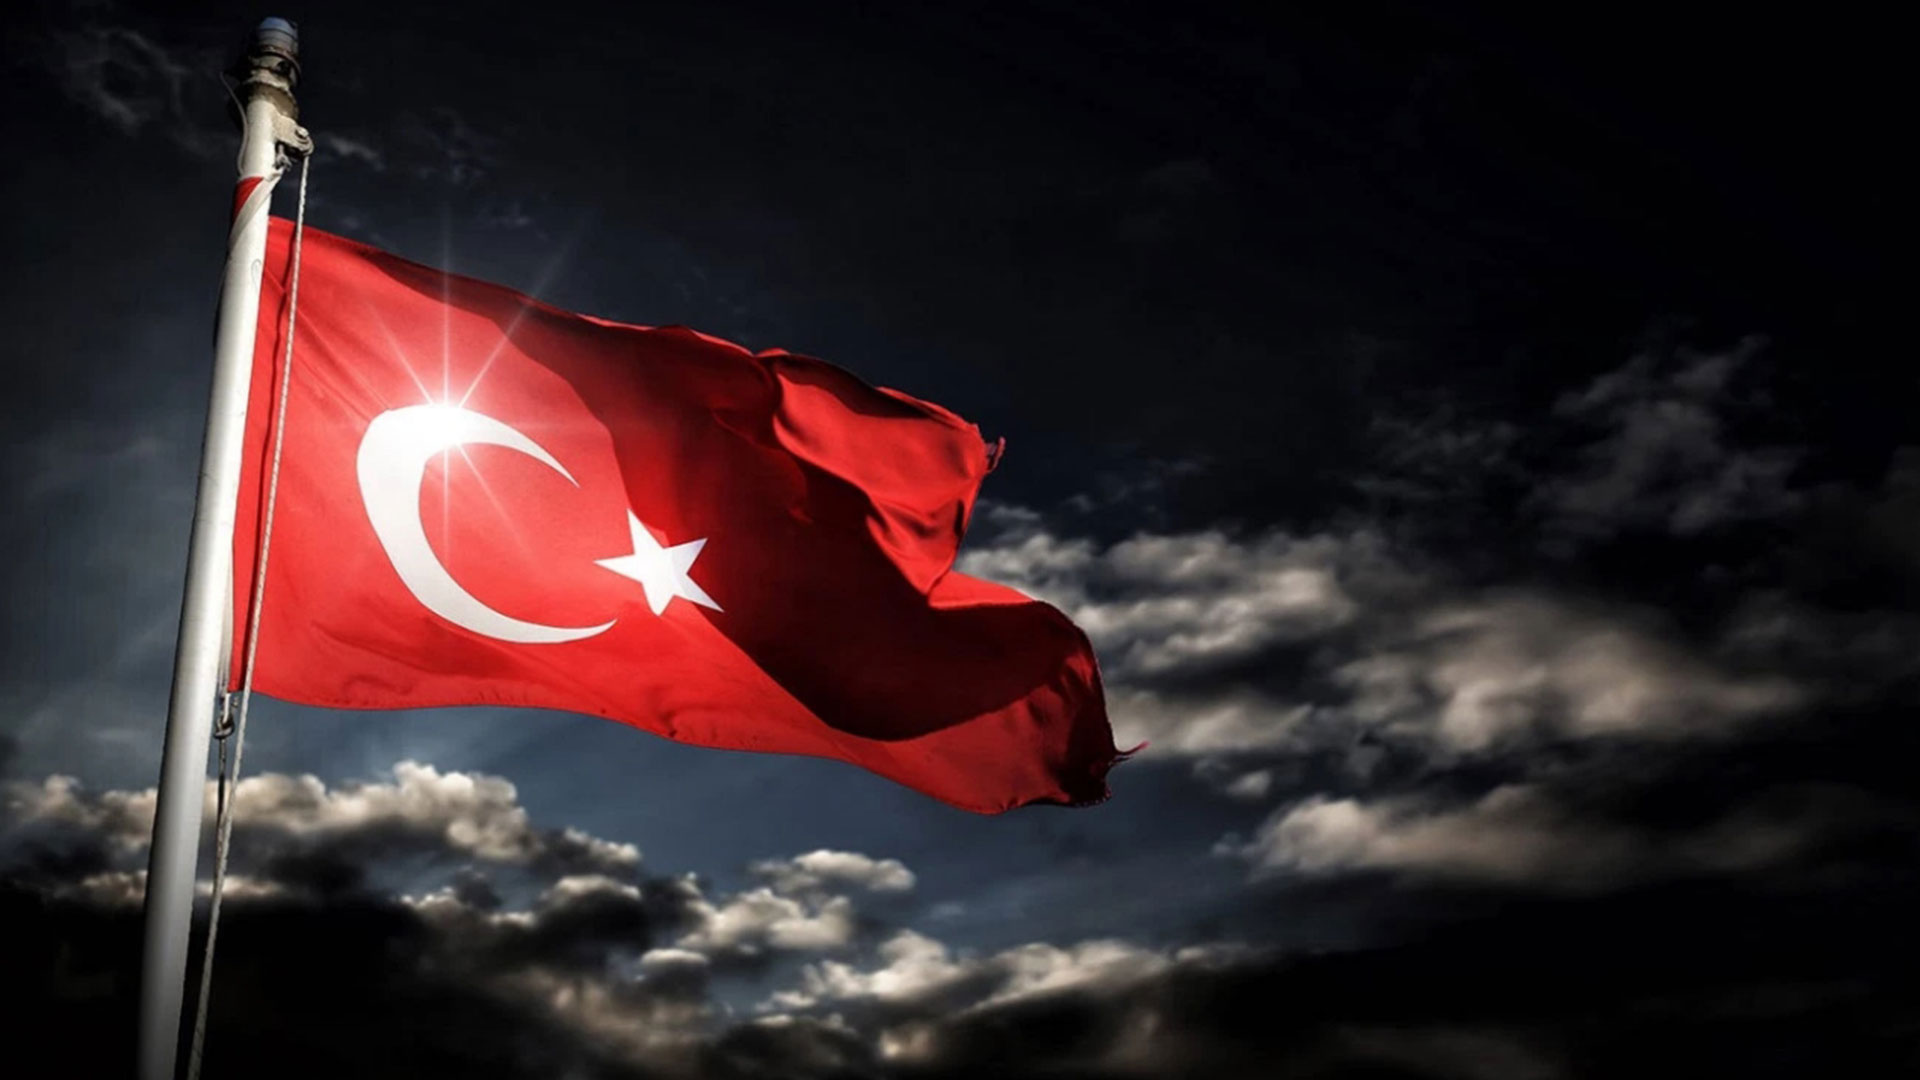 turk bayragi resimleri 2020 19